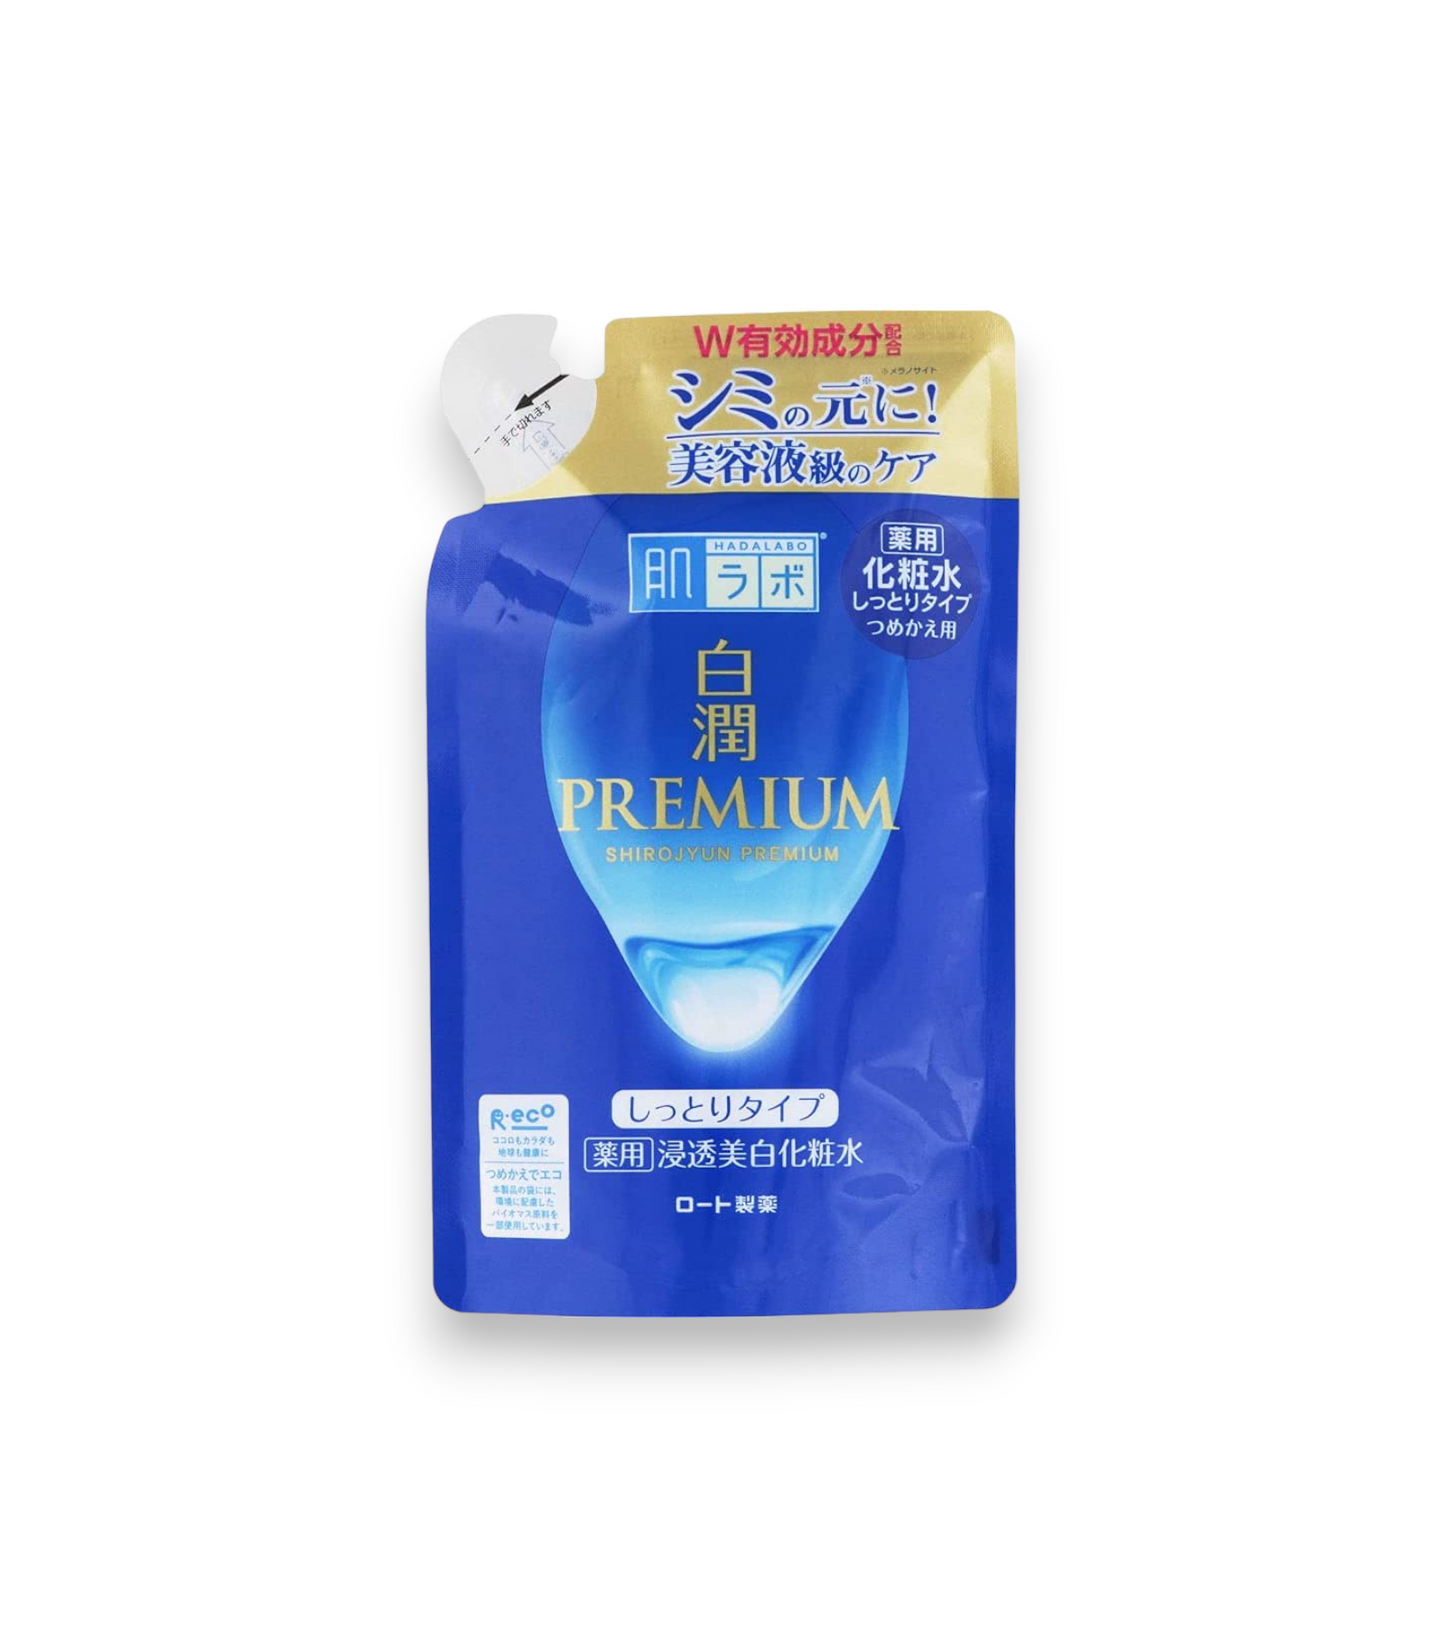 Hada Labo Shirojyun Premium Medicated Whitening Lotion - Refill - 170 ml : Une lotion éclaircissante pour un teint uniforme et une peau hydratée